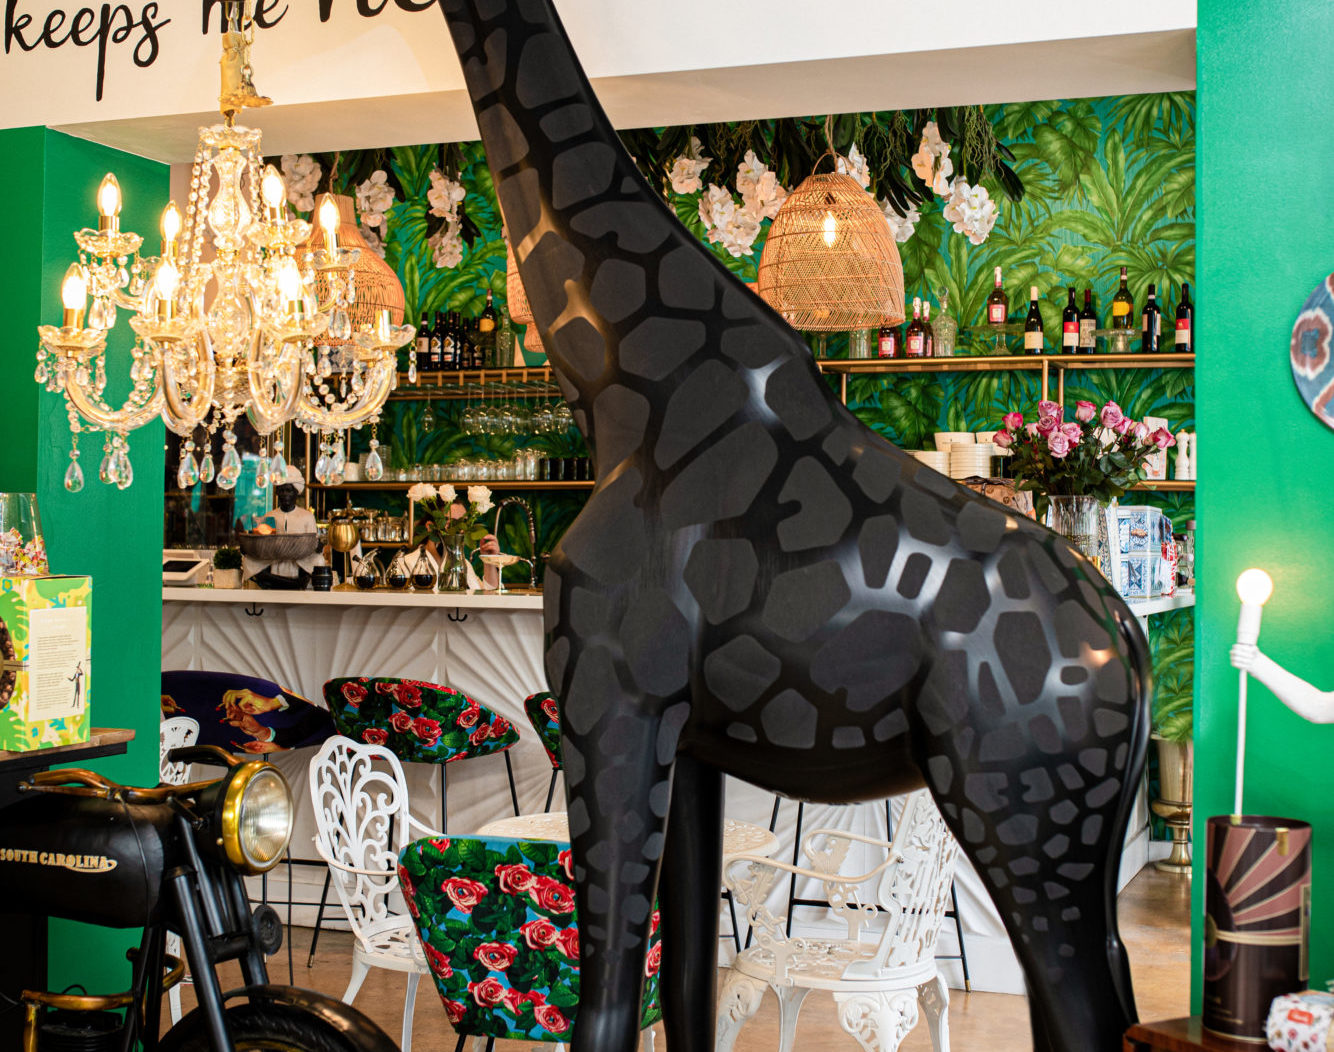 Giraffe in love sculpture